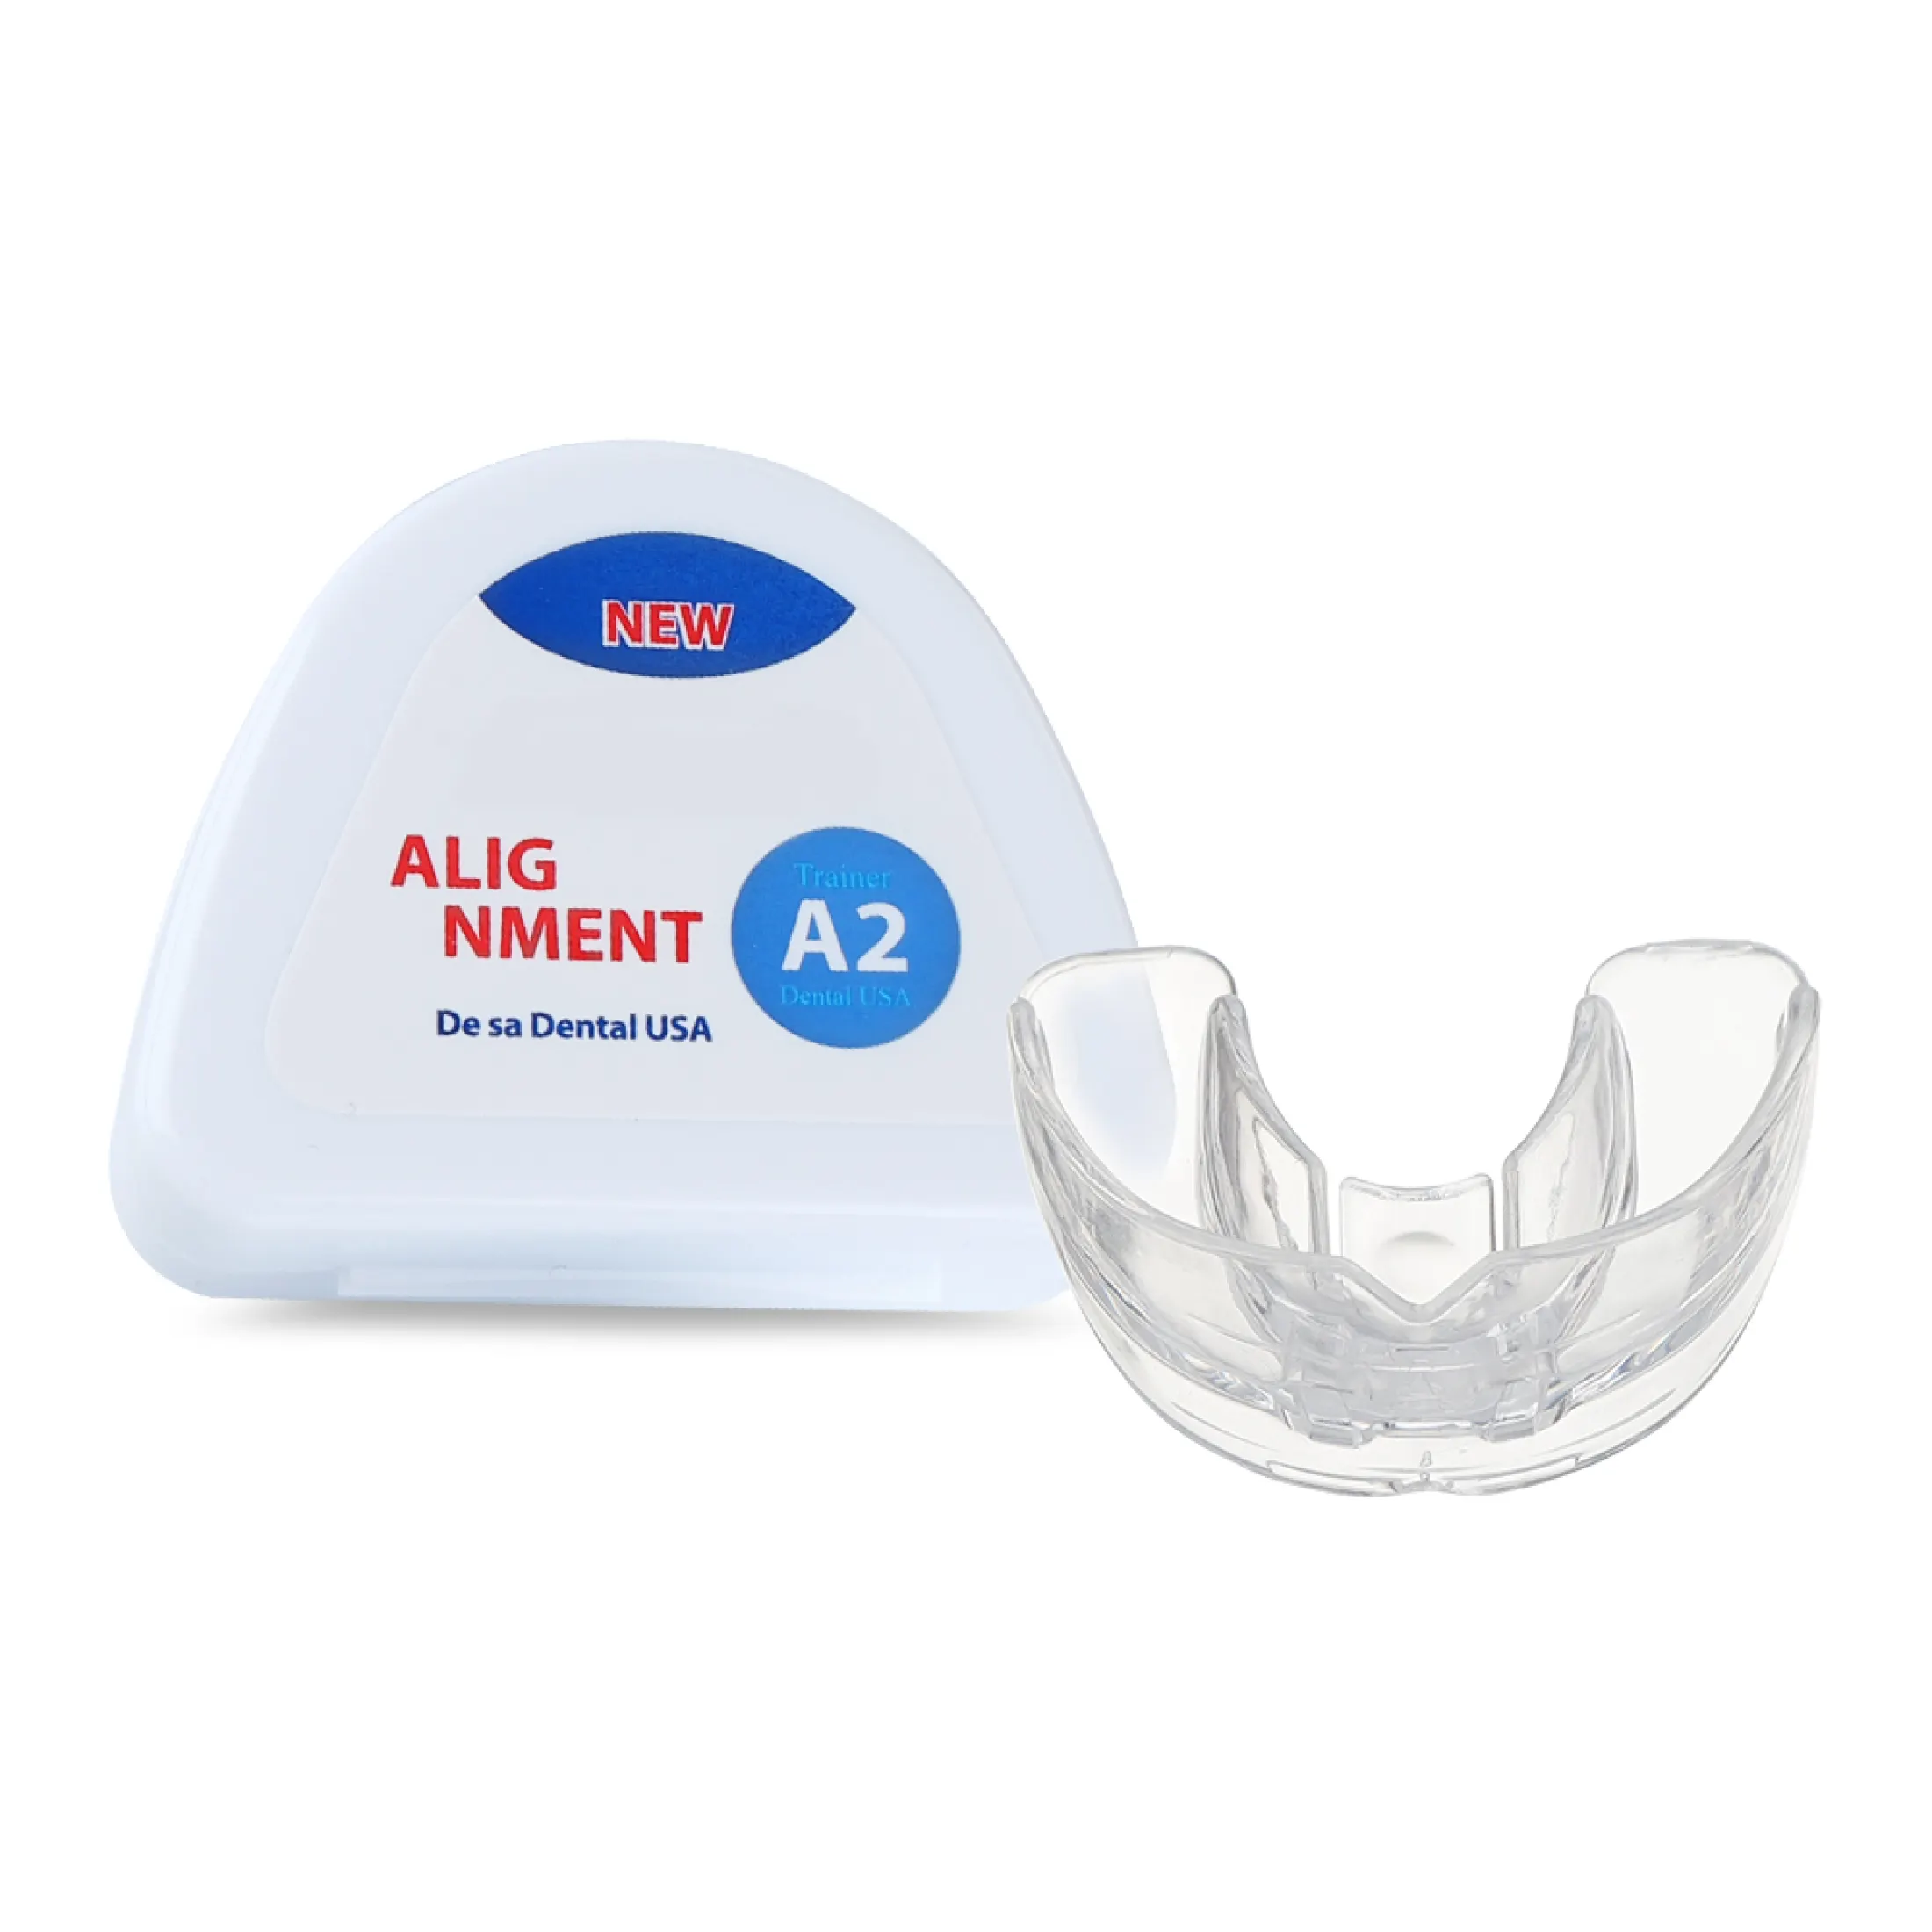 hailicare bộ niềng răng chỉnh nha nha khoa dụng cụ chỉnh răng bằng silicon 3 giai đoạn dụng cụ giữ răng dụng cụ giữ răng dụng cụ chỉnh răng dụng cụ duỗi răng cho trẻ em 14